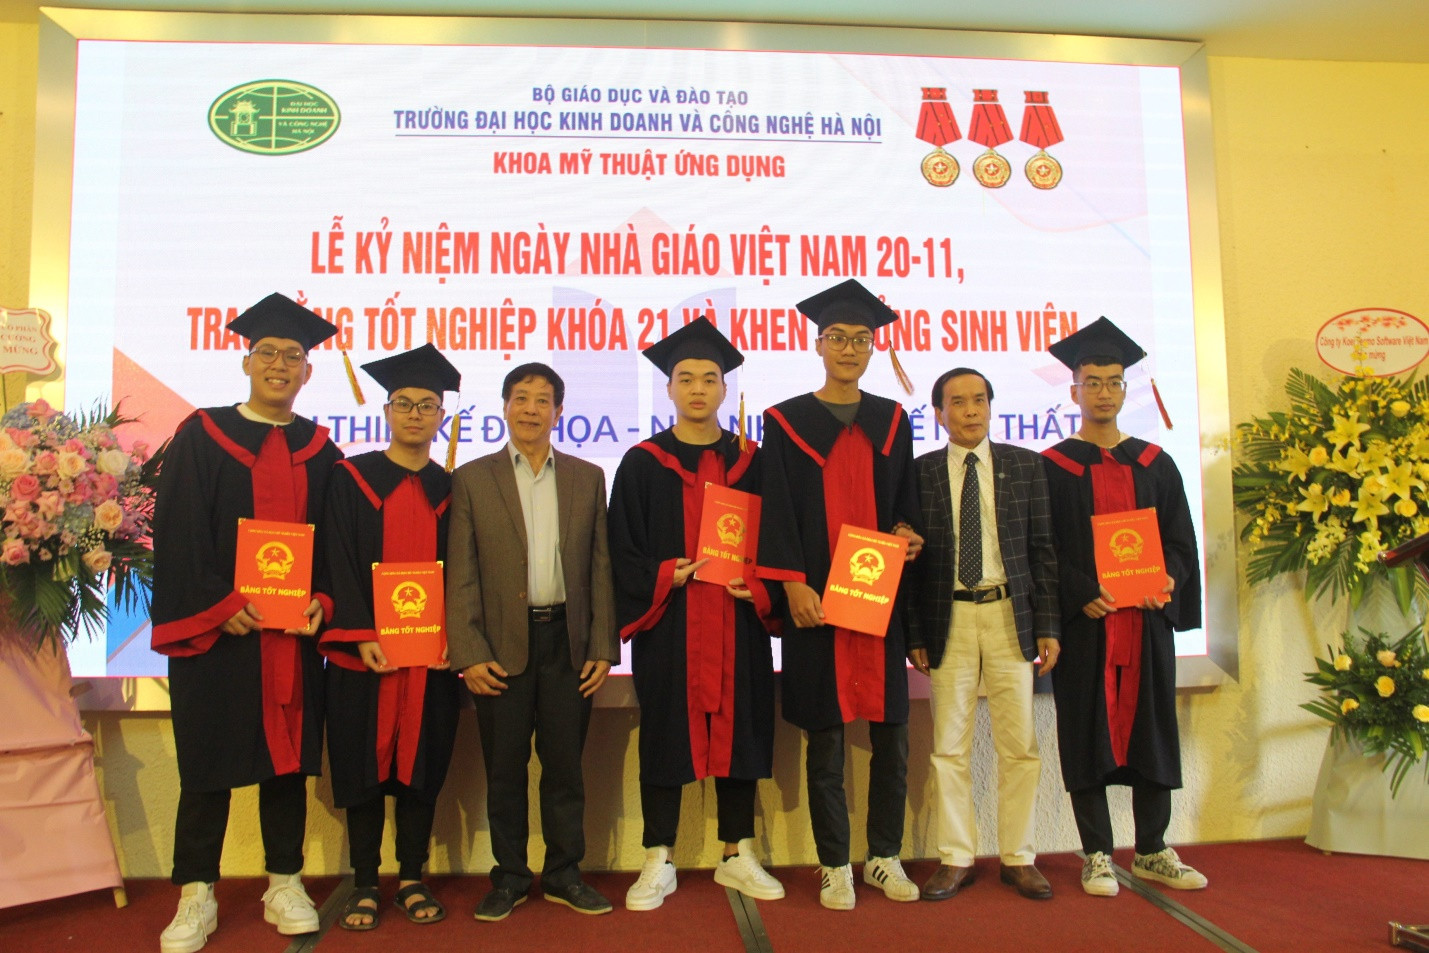 Trường Đại học Kinh doanh và Công nghệ Hà Nội trao bằng tốt nghiệp cho sinh viên K21 và khen thưởng cho sinh viên ngành thiết kế - Ảnh 3.